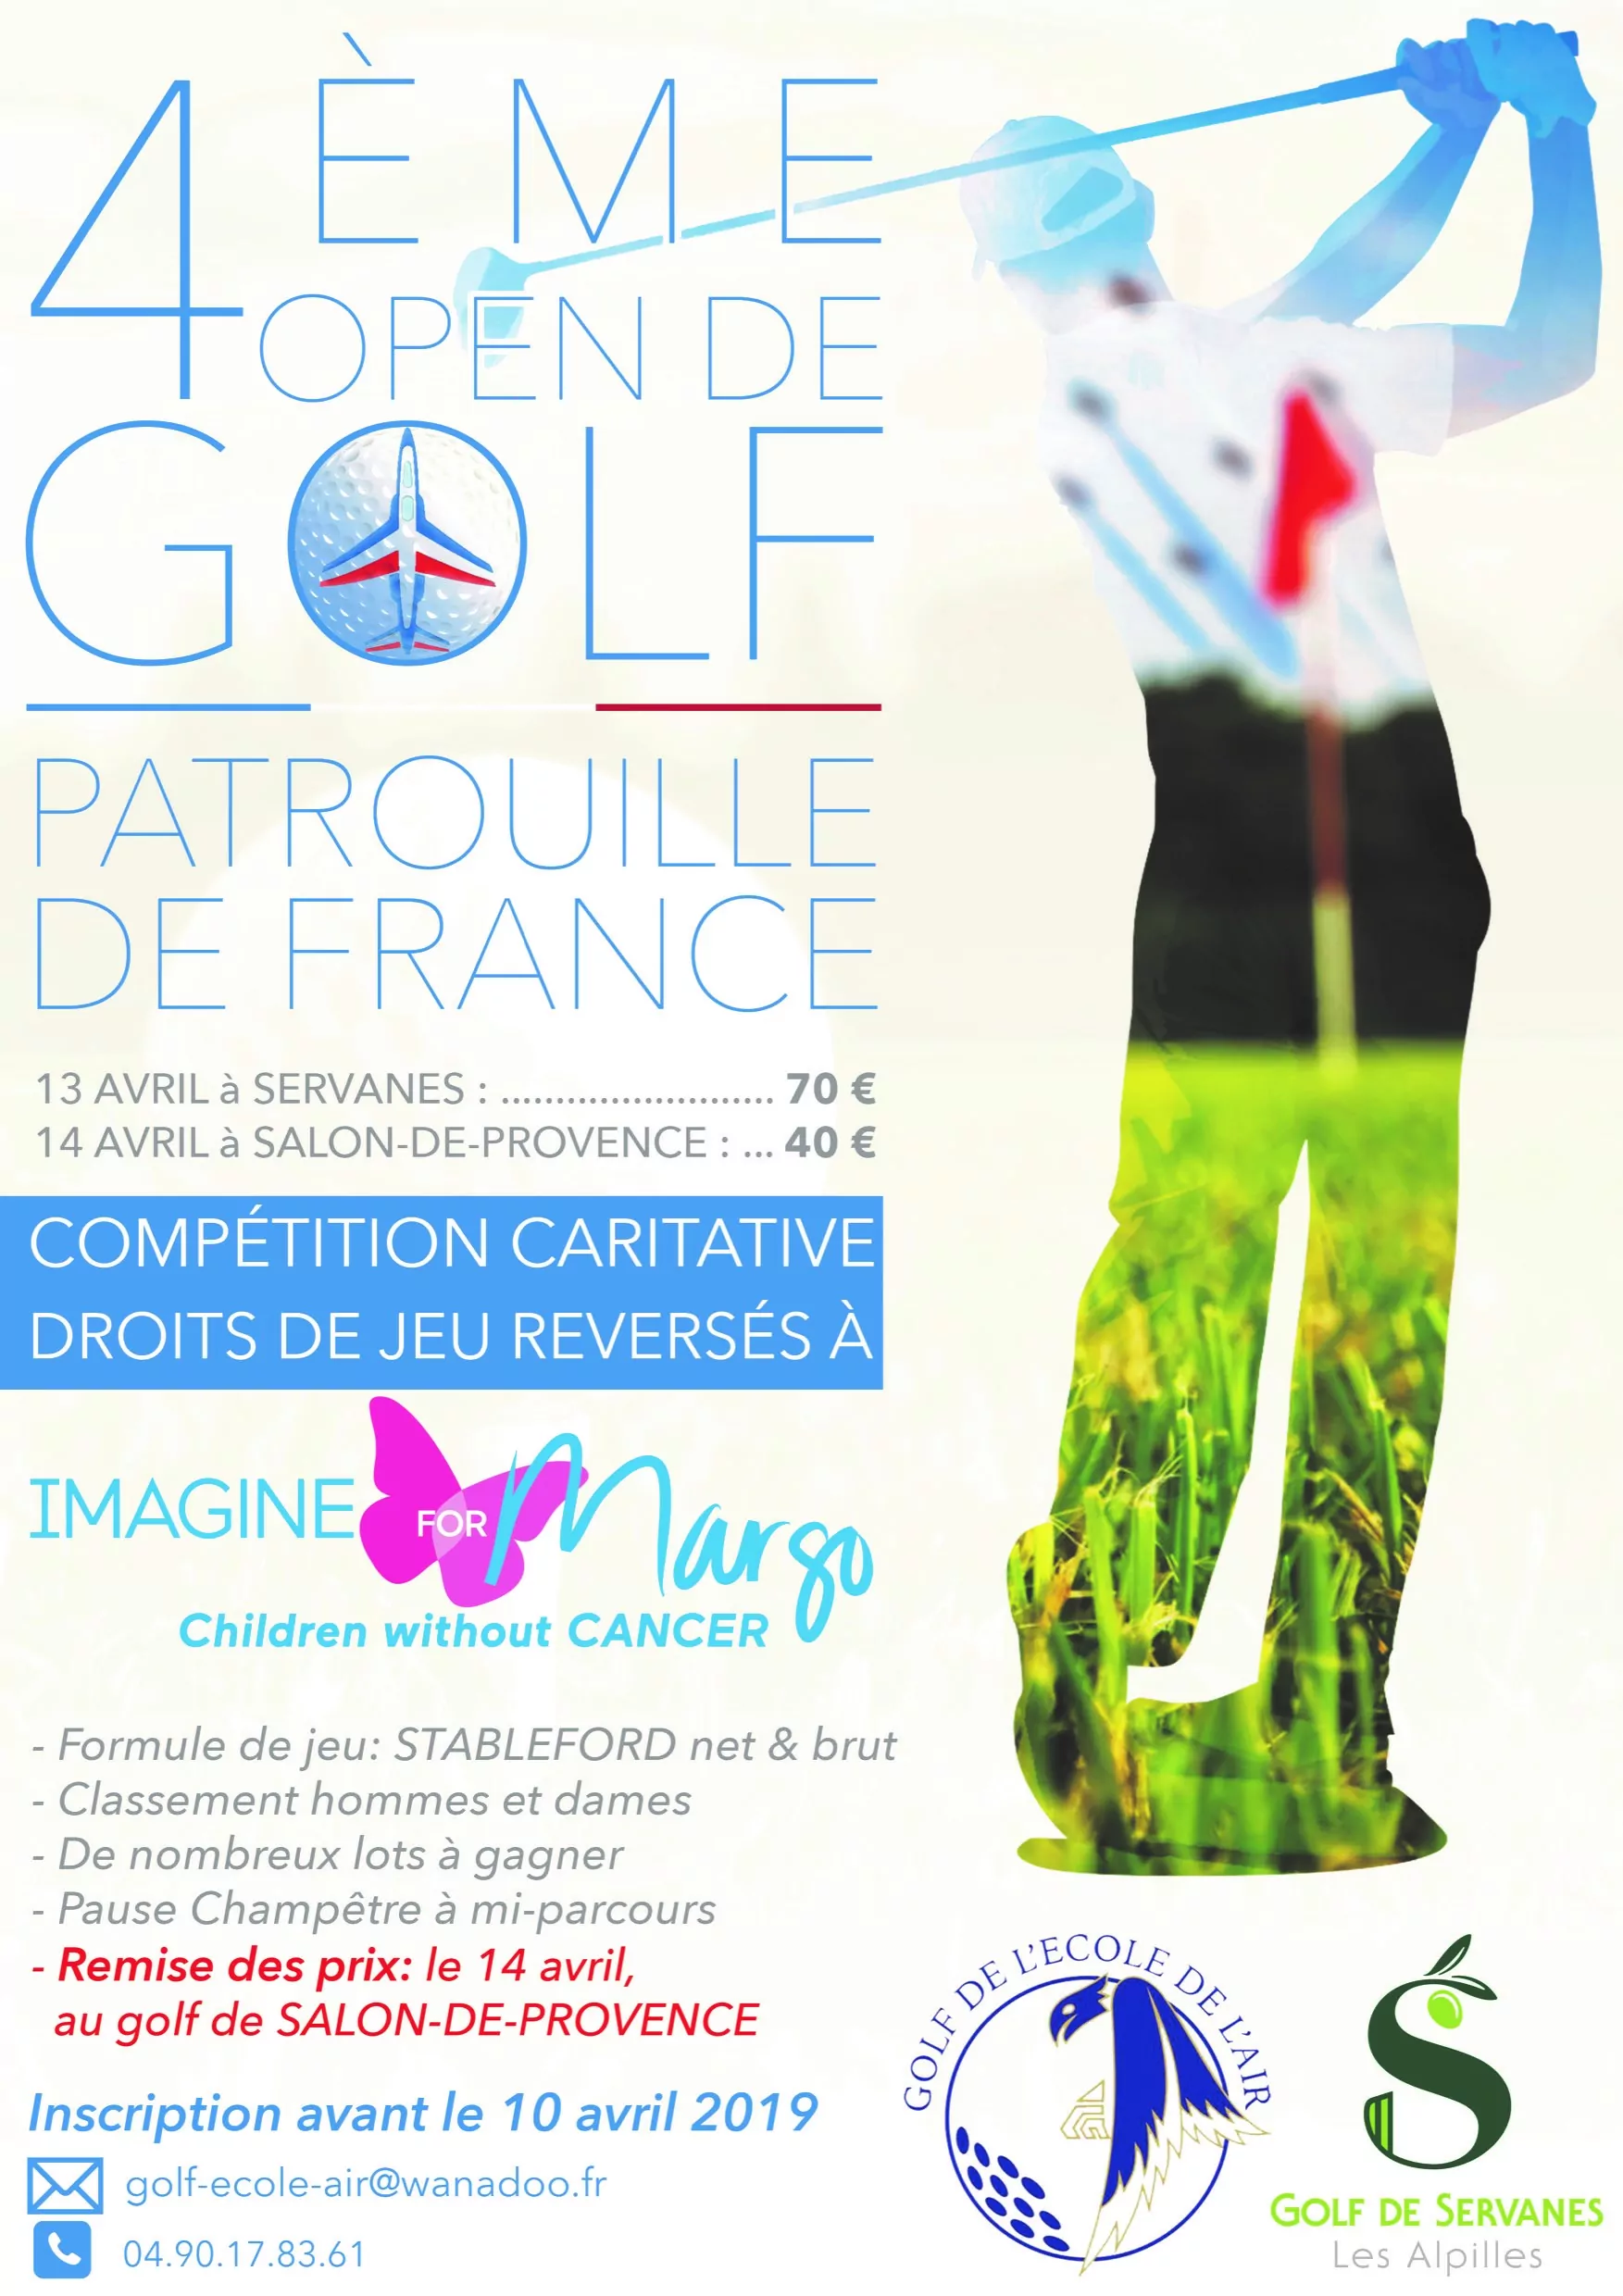 open de golf 2019 de la Patrouille de France au profit d'Imagine for Margo pour lutter contre le cancer des enfants